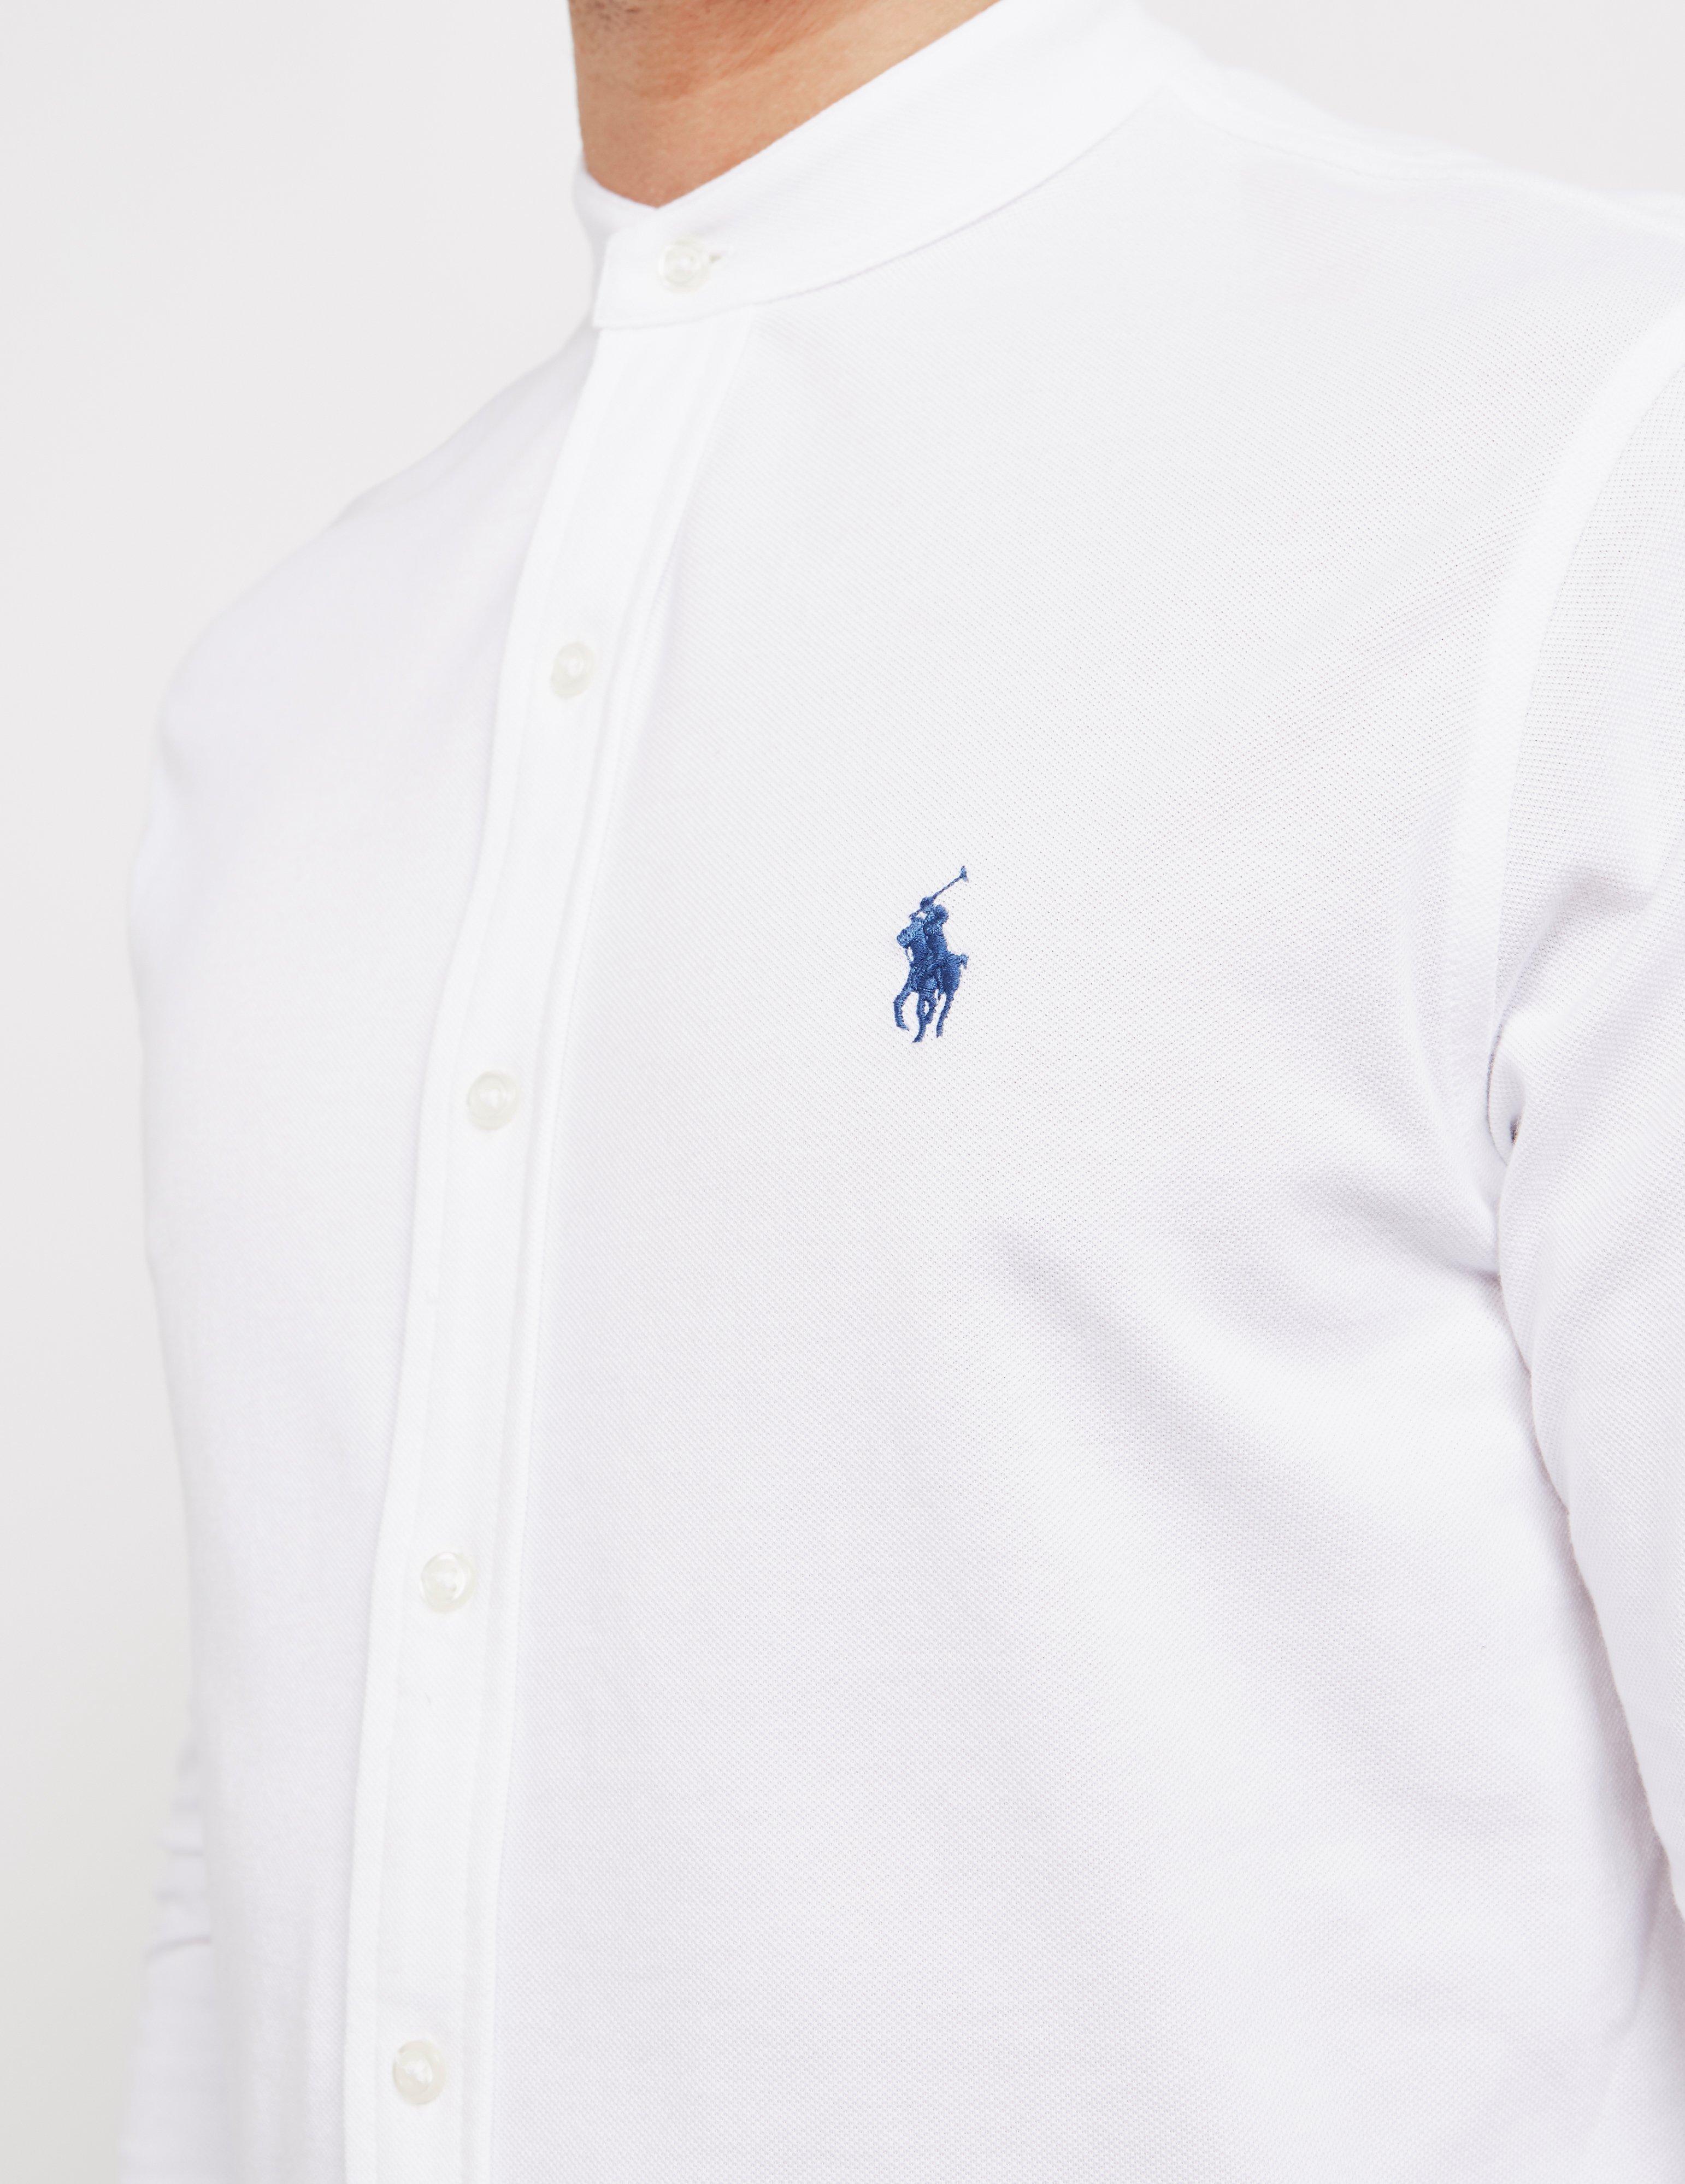 Polo Ralph Lauren Grandad Collar Long Sleeve Shirt White for Men - Lyst